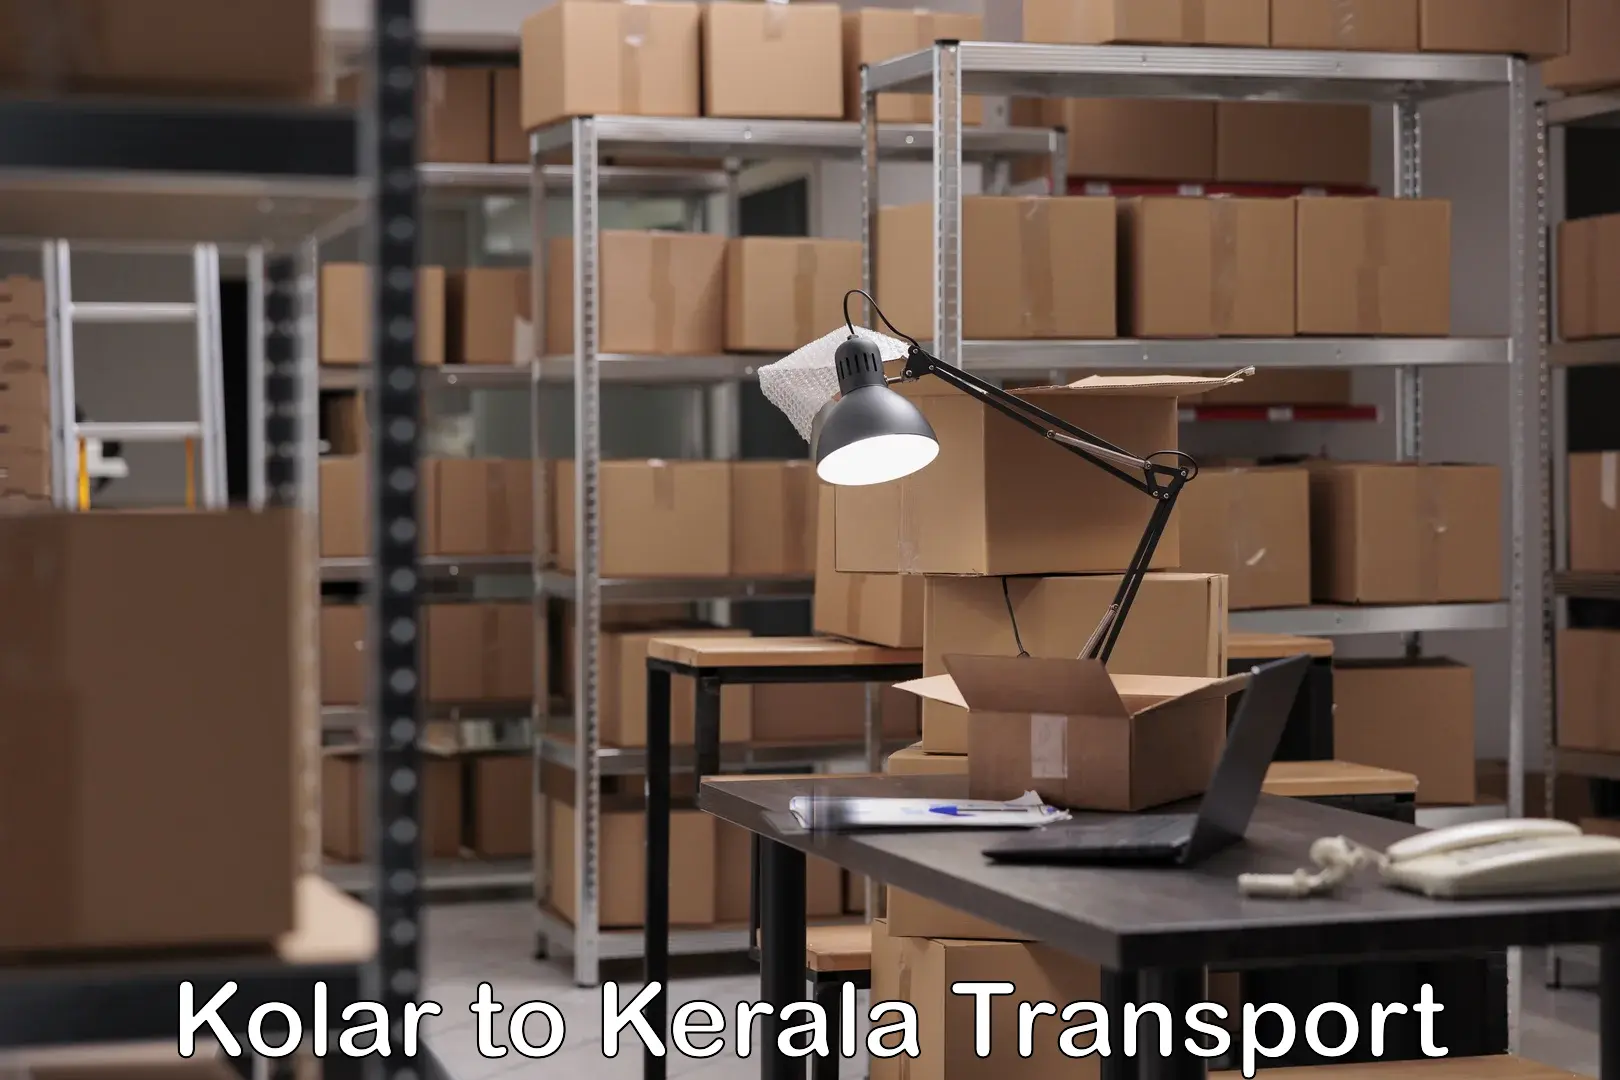 Truck transport companies in India Kolar to Muvattupuzha